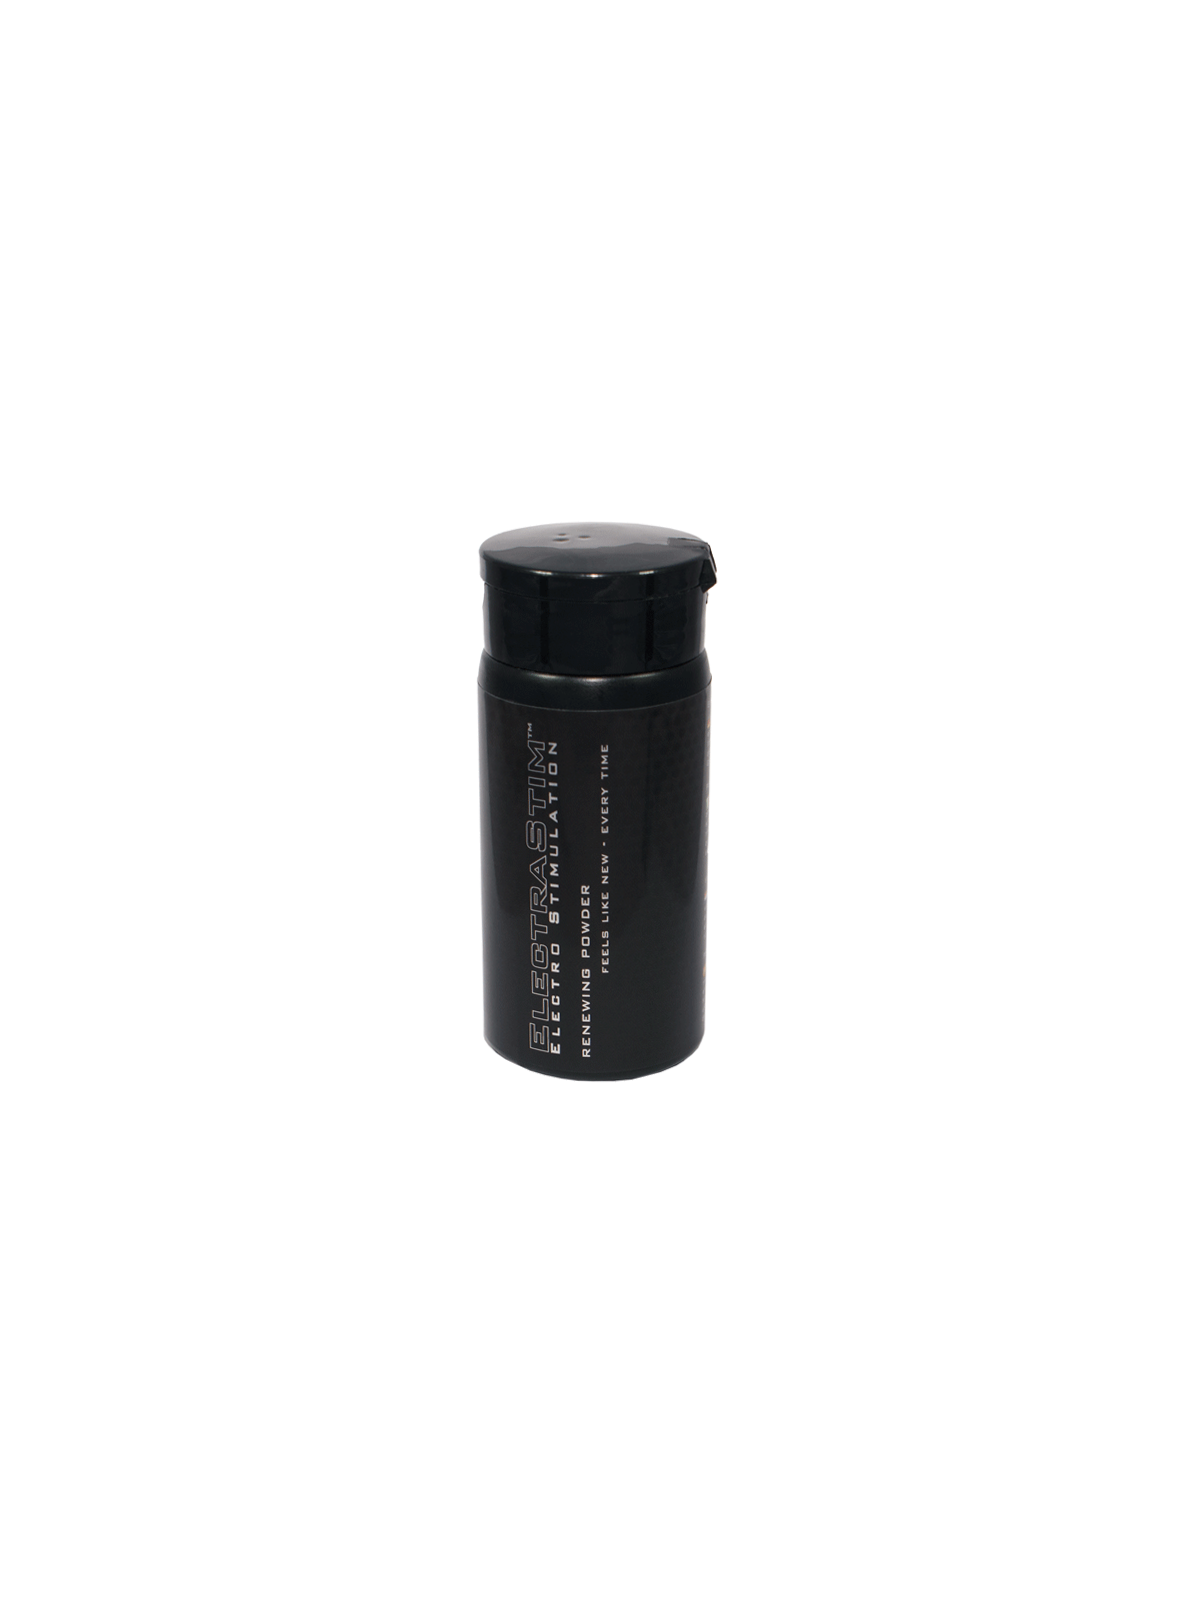 Electrastim Jack Socket Tpe Renewing Powder - Comprar Recambio Electrastim - Recambios & accesorios (1)